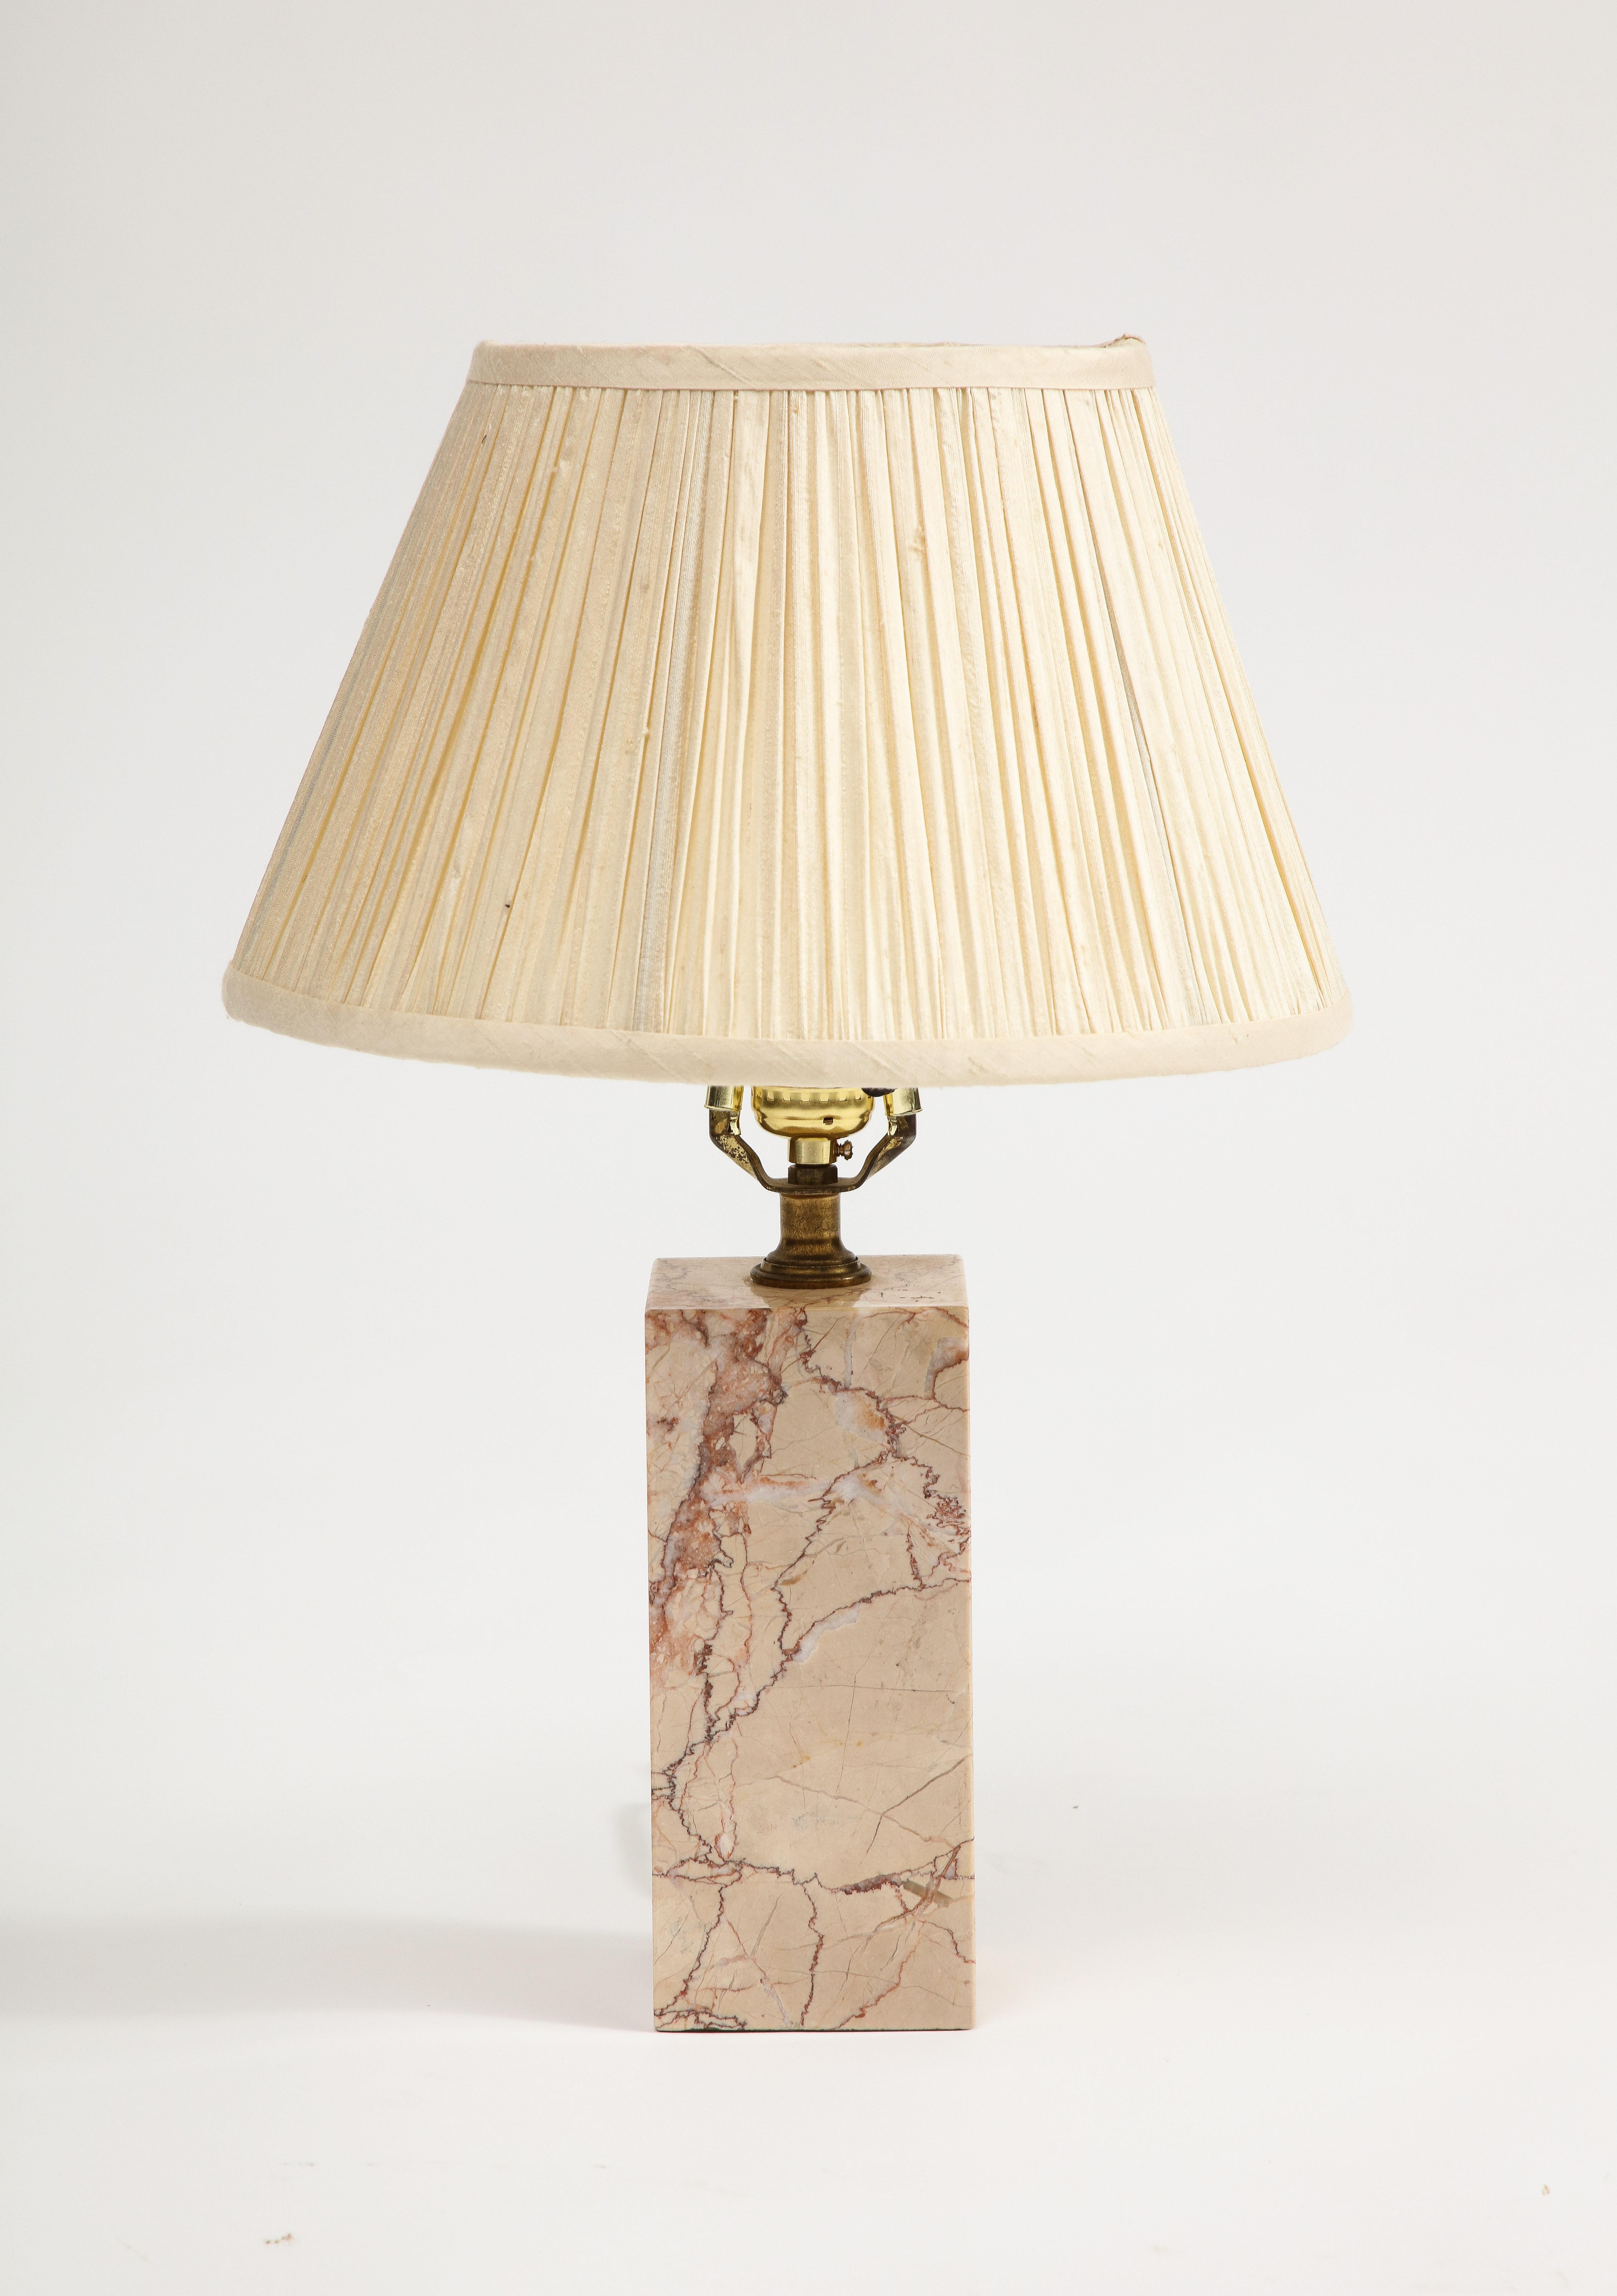 Lampe de table en marbre rose, attribuée à AT&T. Robsjohn-Gibbings. Livré avec un abat-jour plissé crème. 

Dimensions supplémentaires - 
Avec abat-jour : 12